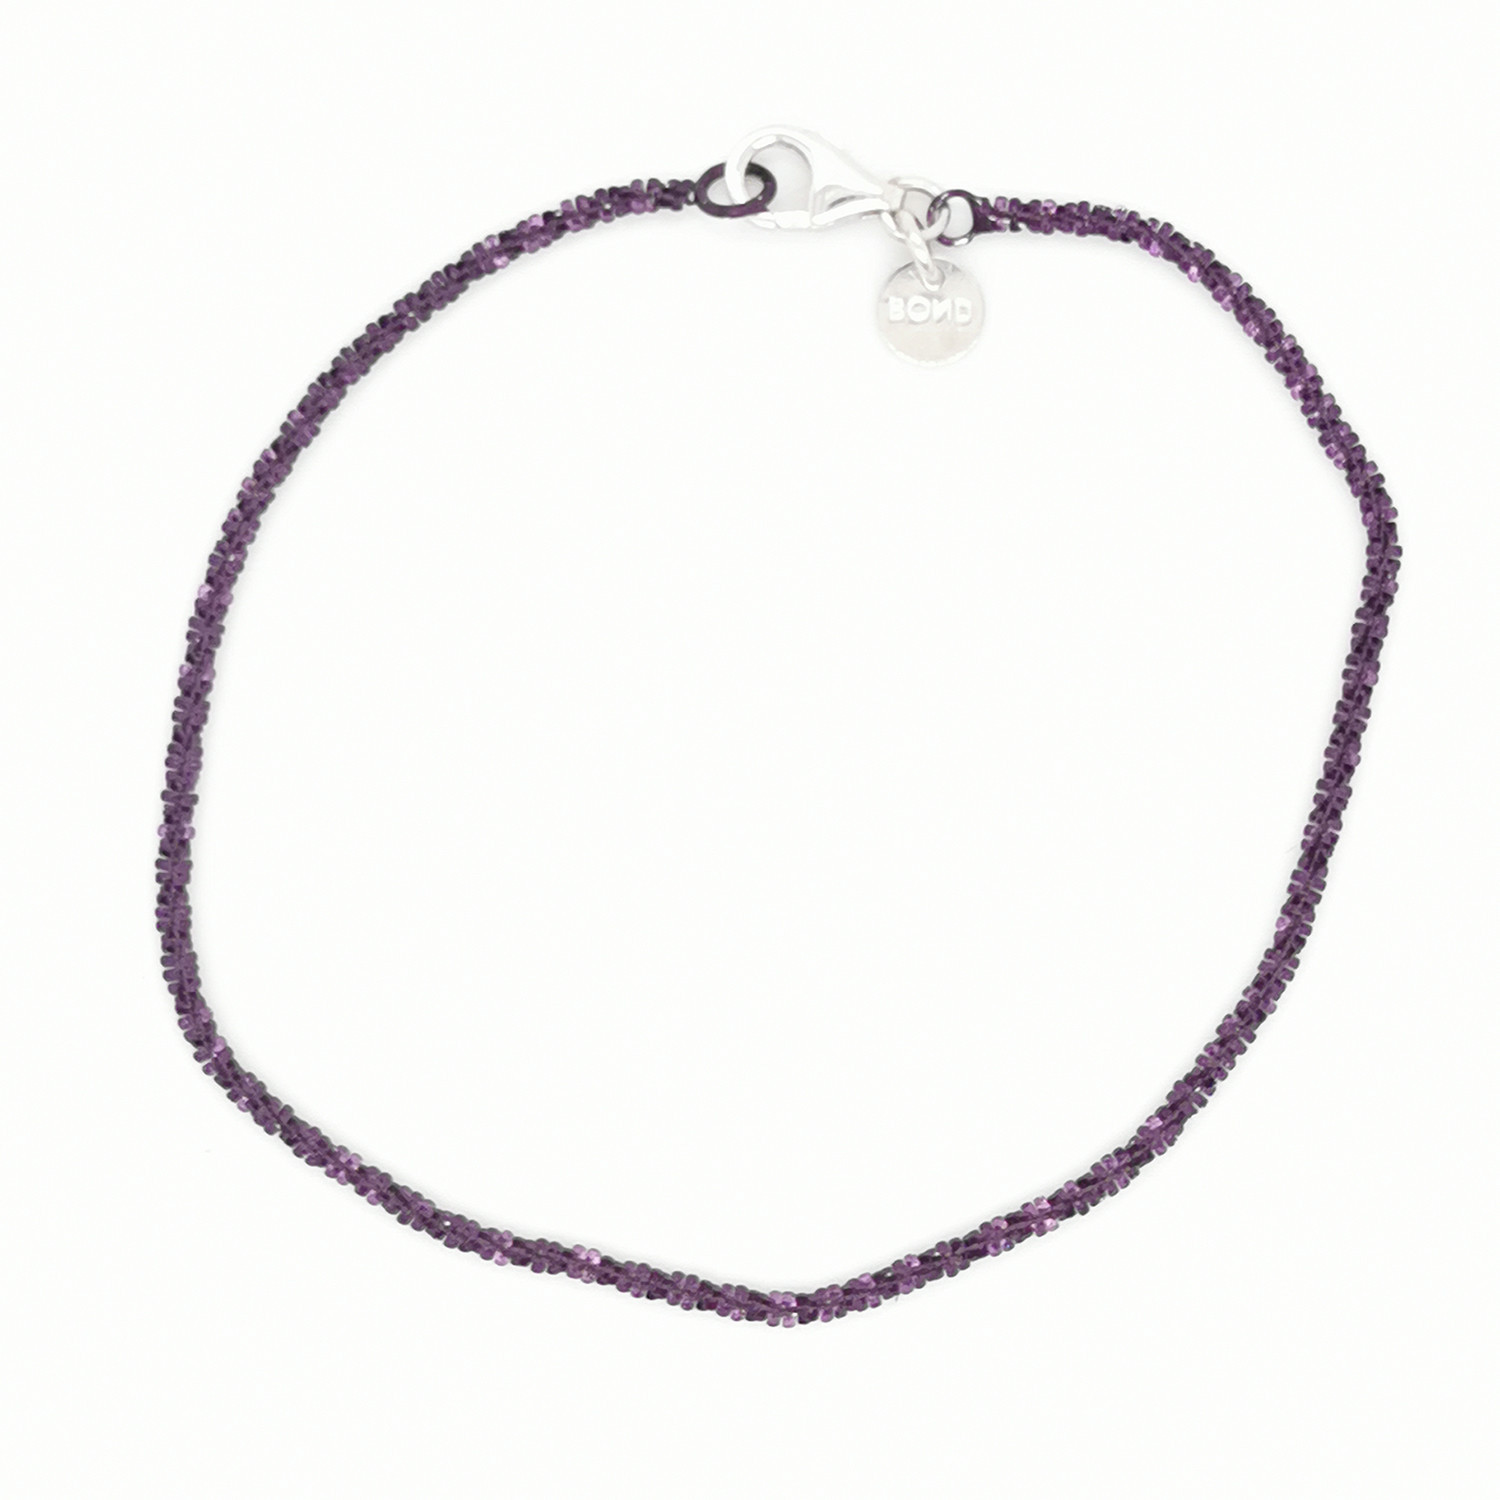 Bracelet Elden argent 925/1000 1 rang violet pourpre
collection Catch the Rainbow